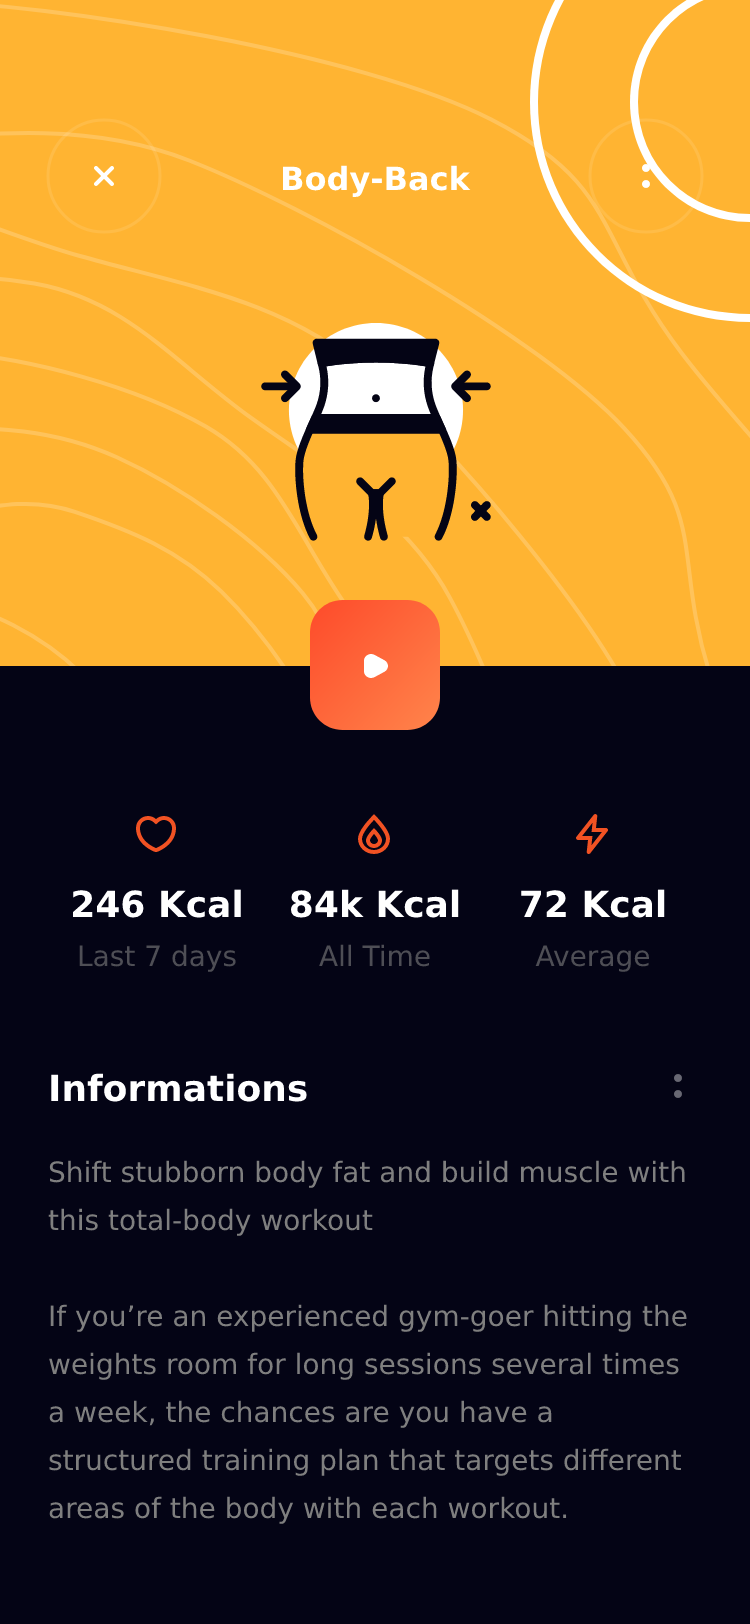 CaFit运动健身锻炼应用App Ui界面插图9